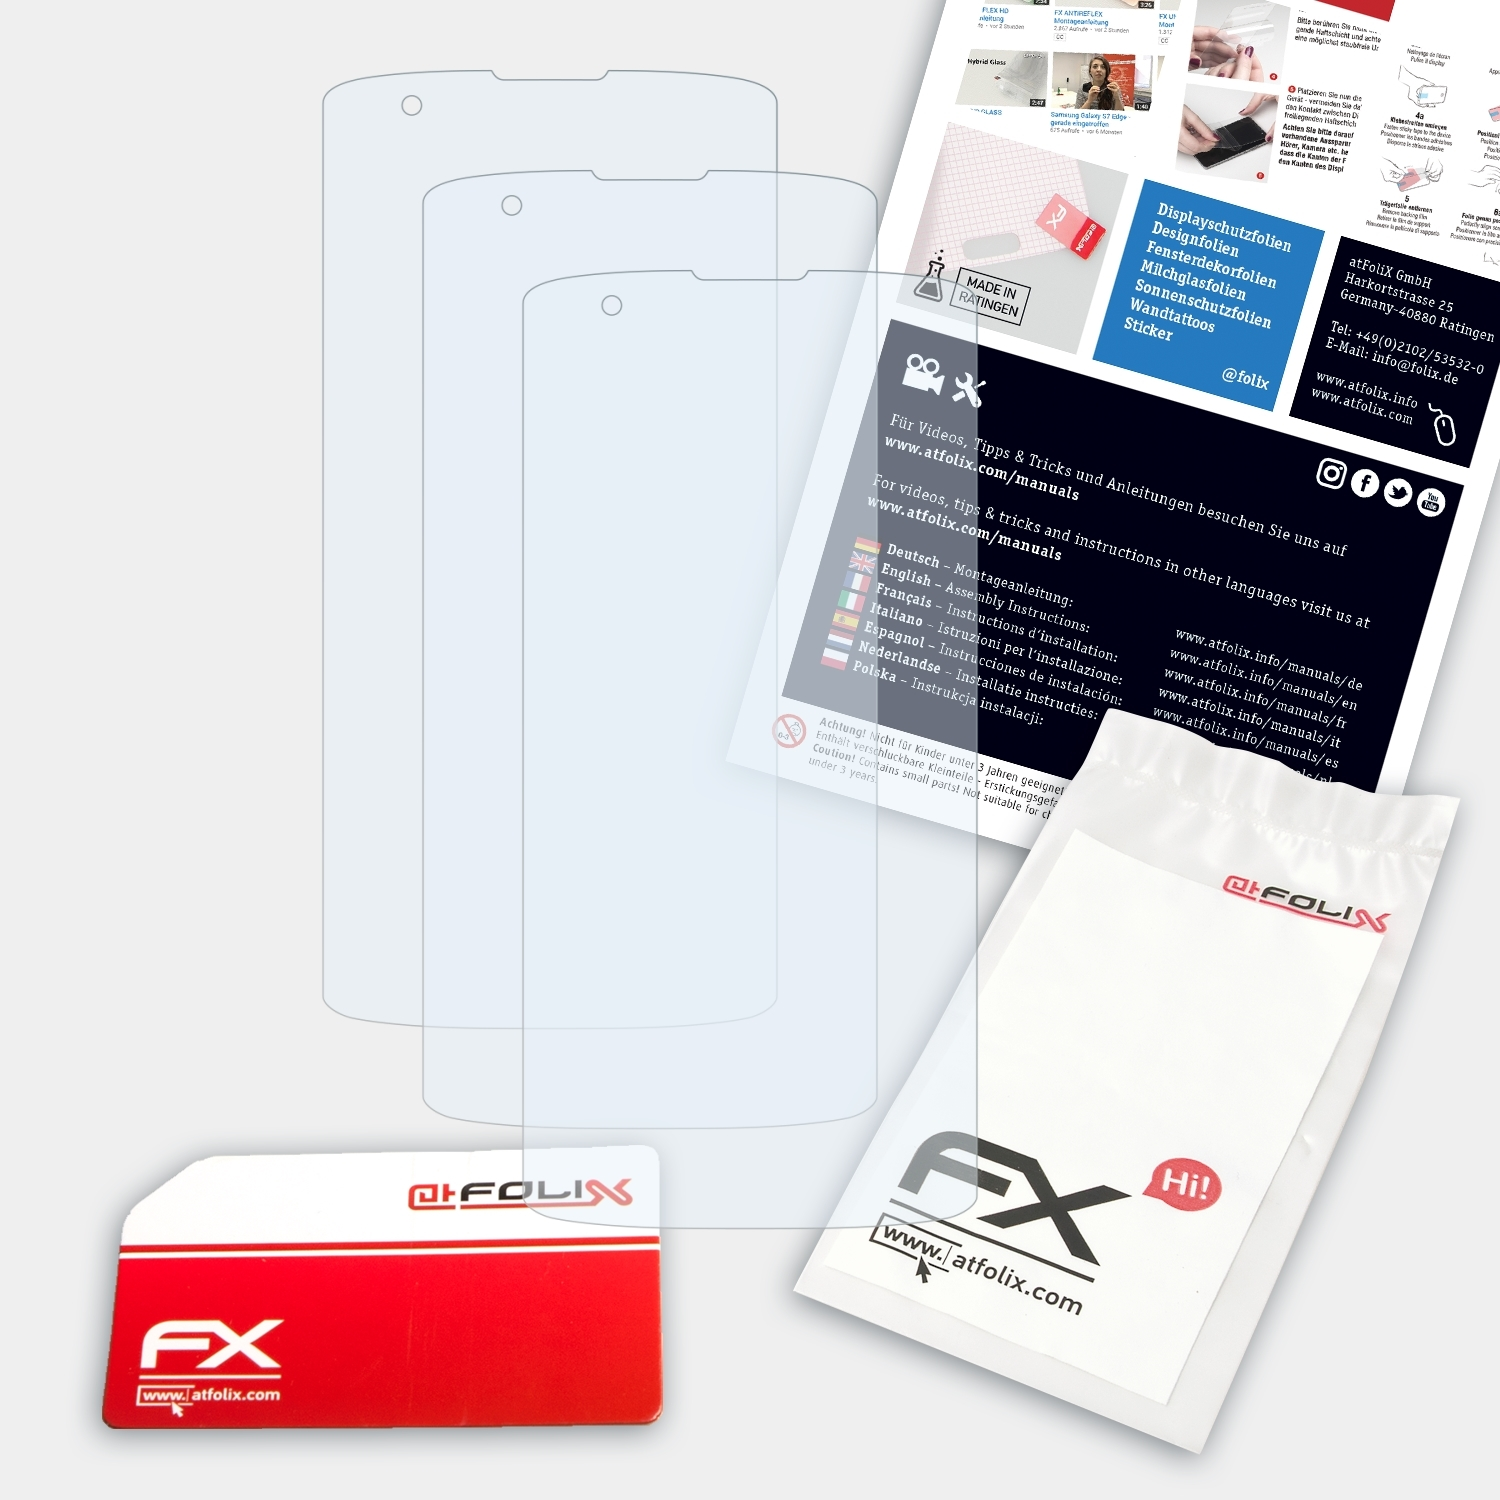 ATFOLIX Displayschutz(für 3x K8) FX-Clear LG